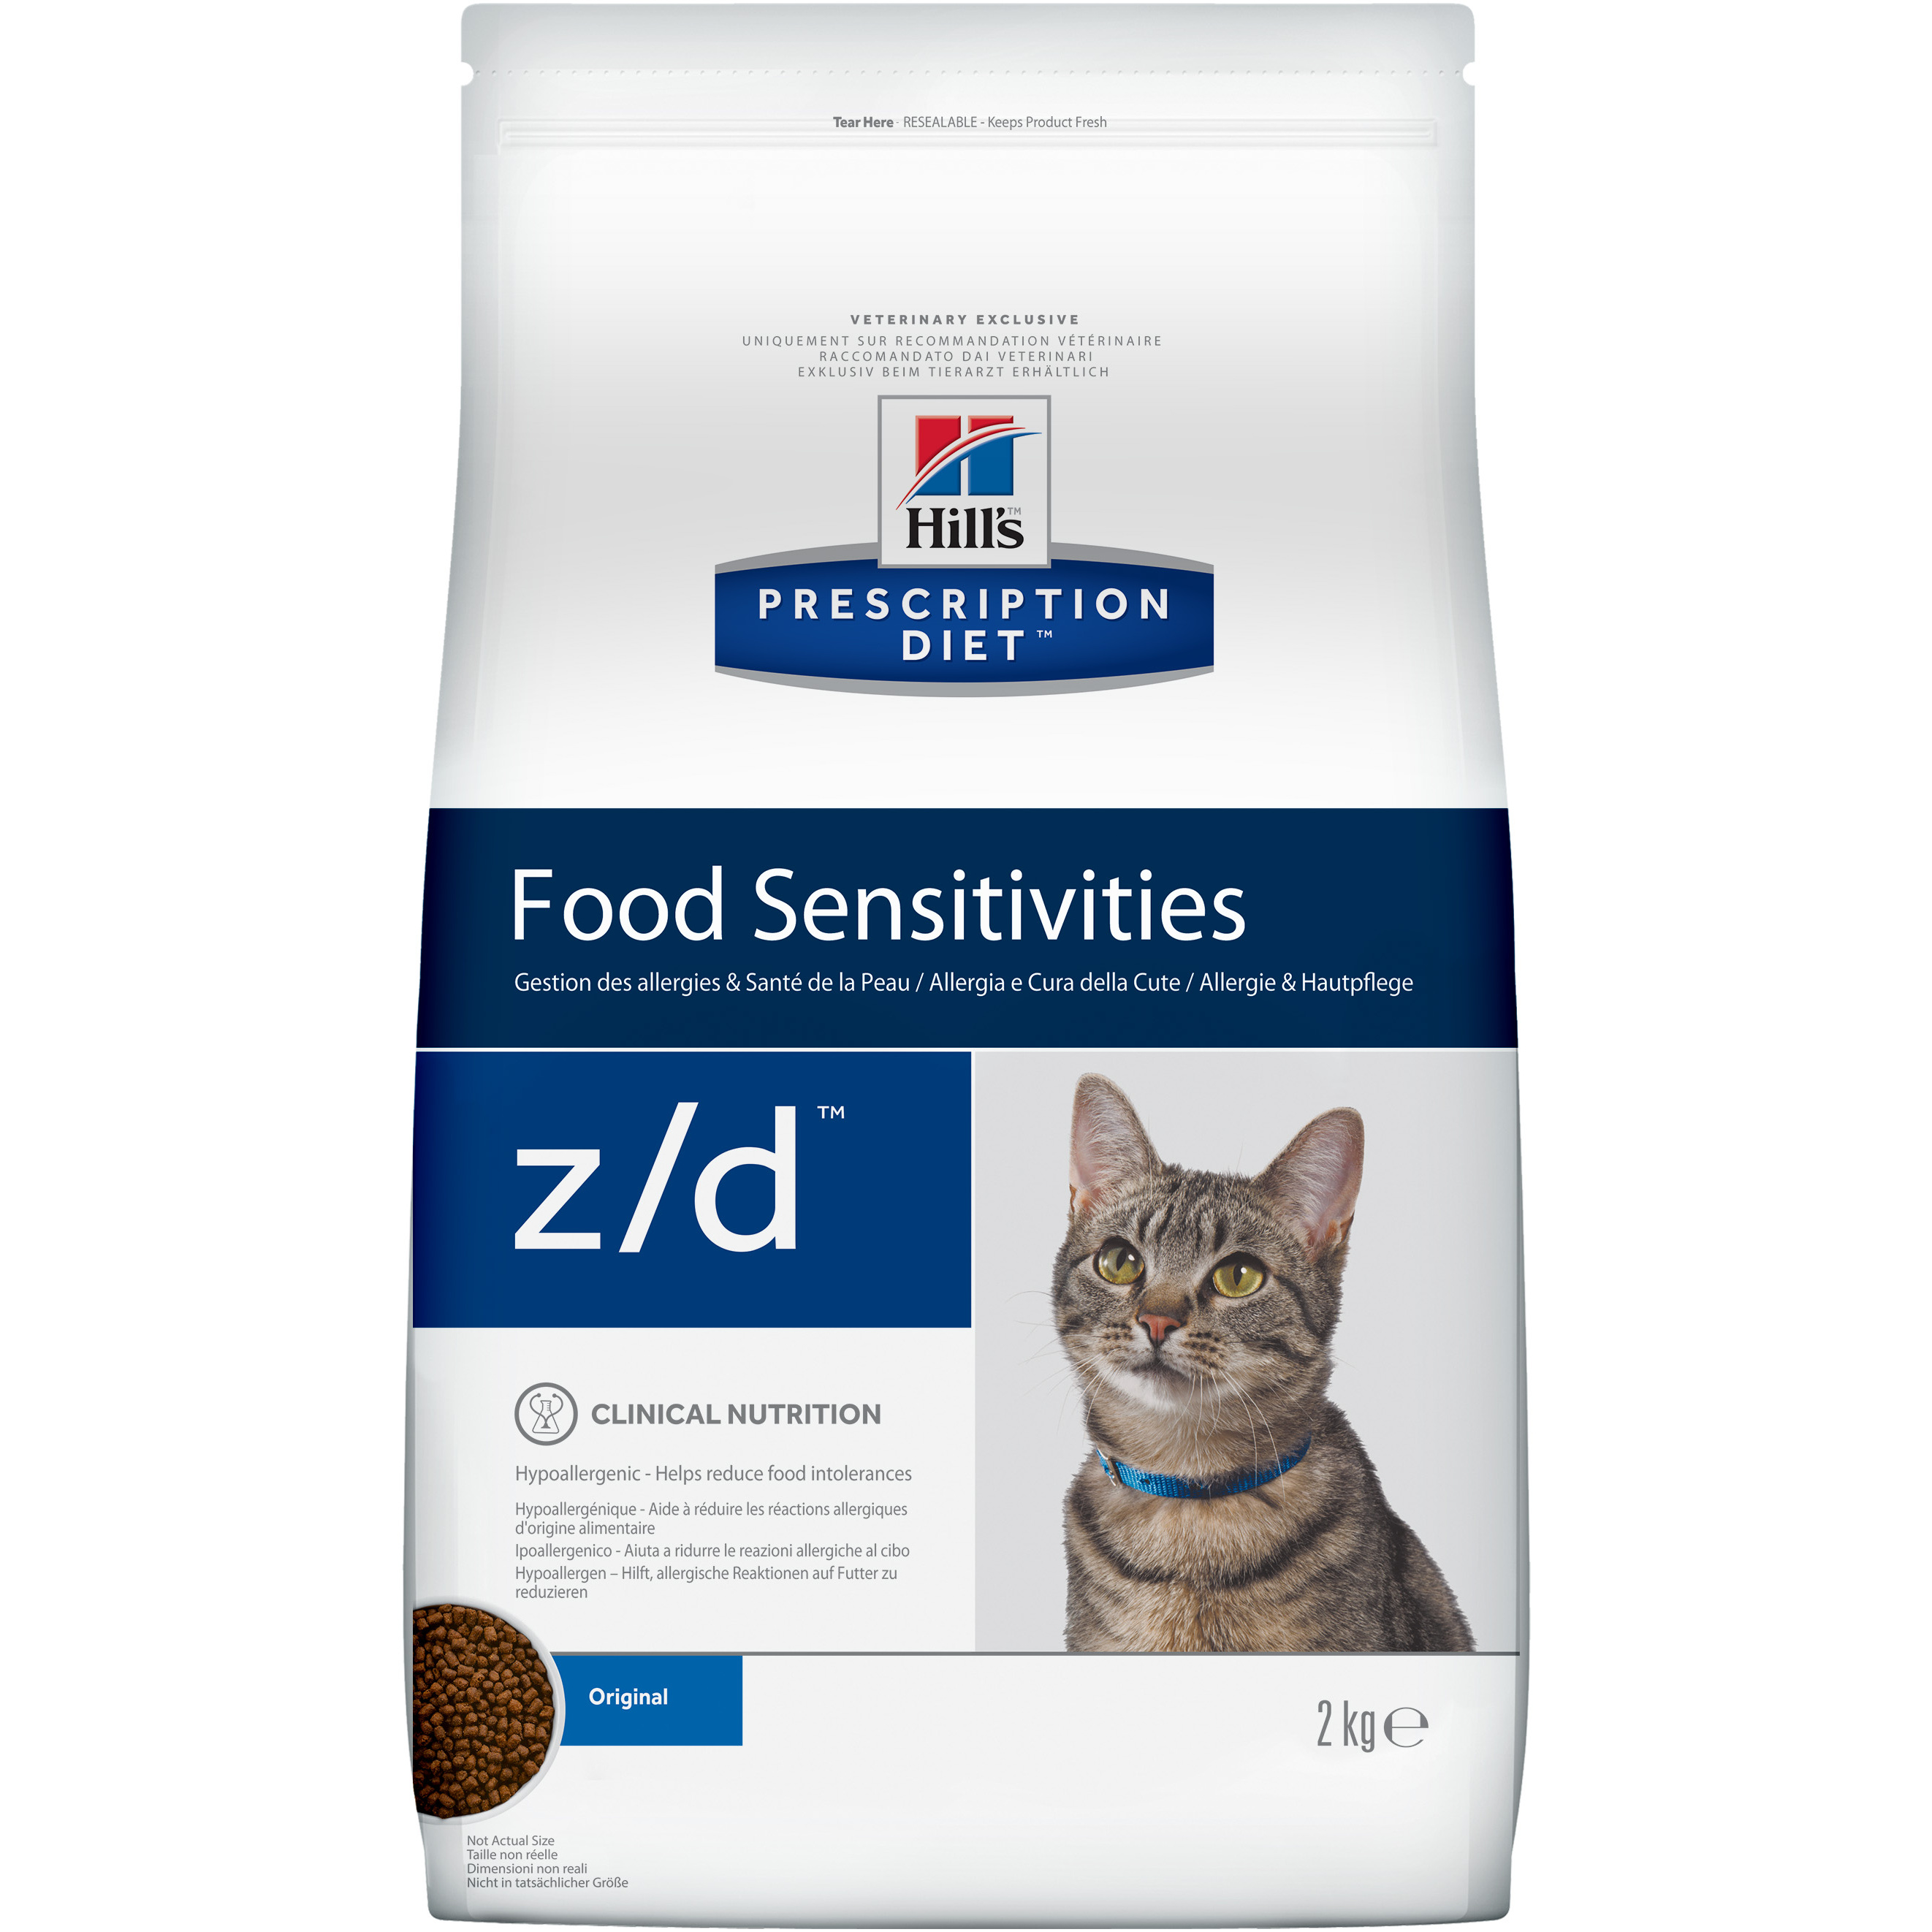 фото Сухой корм для кошек hill's prescription diet food sensitivities, гипоаллергенный, 2кг